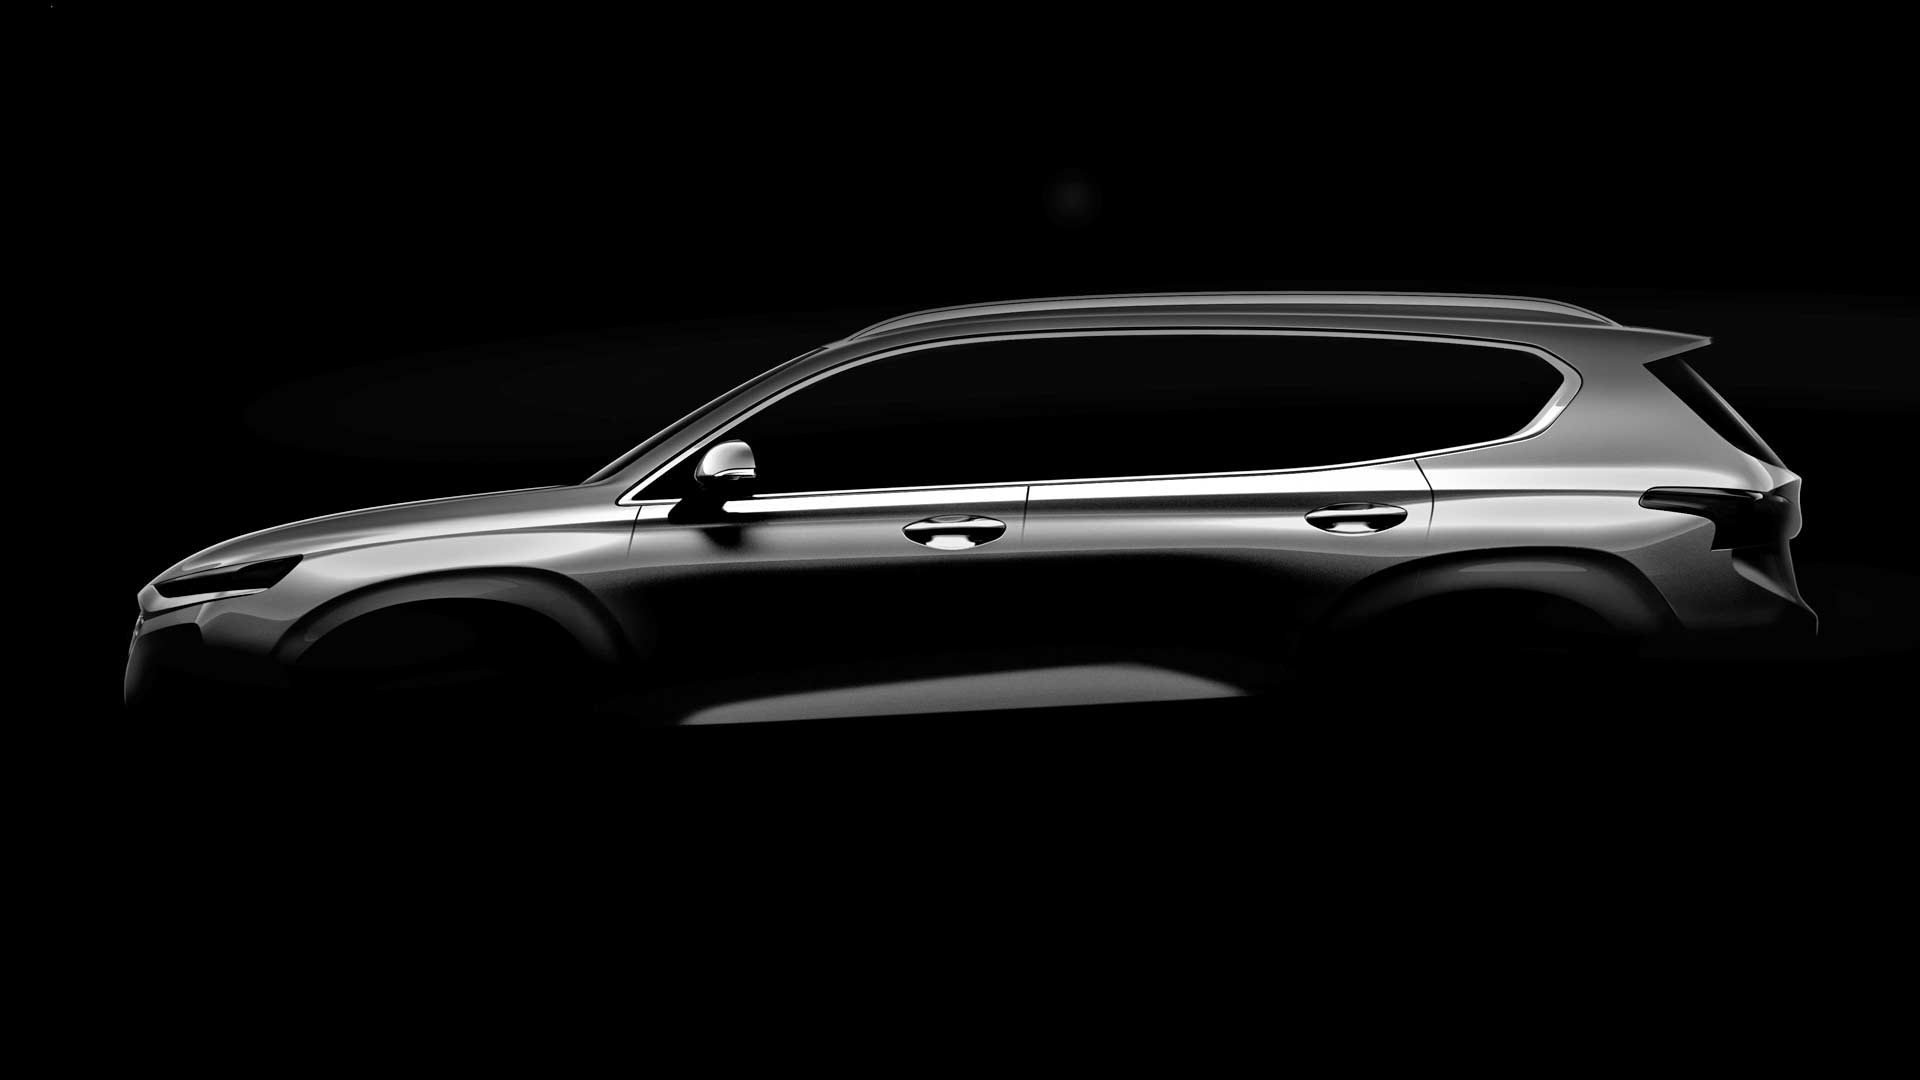 2019-4th-generation-Hyundai-Santa Fe-teaser